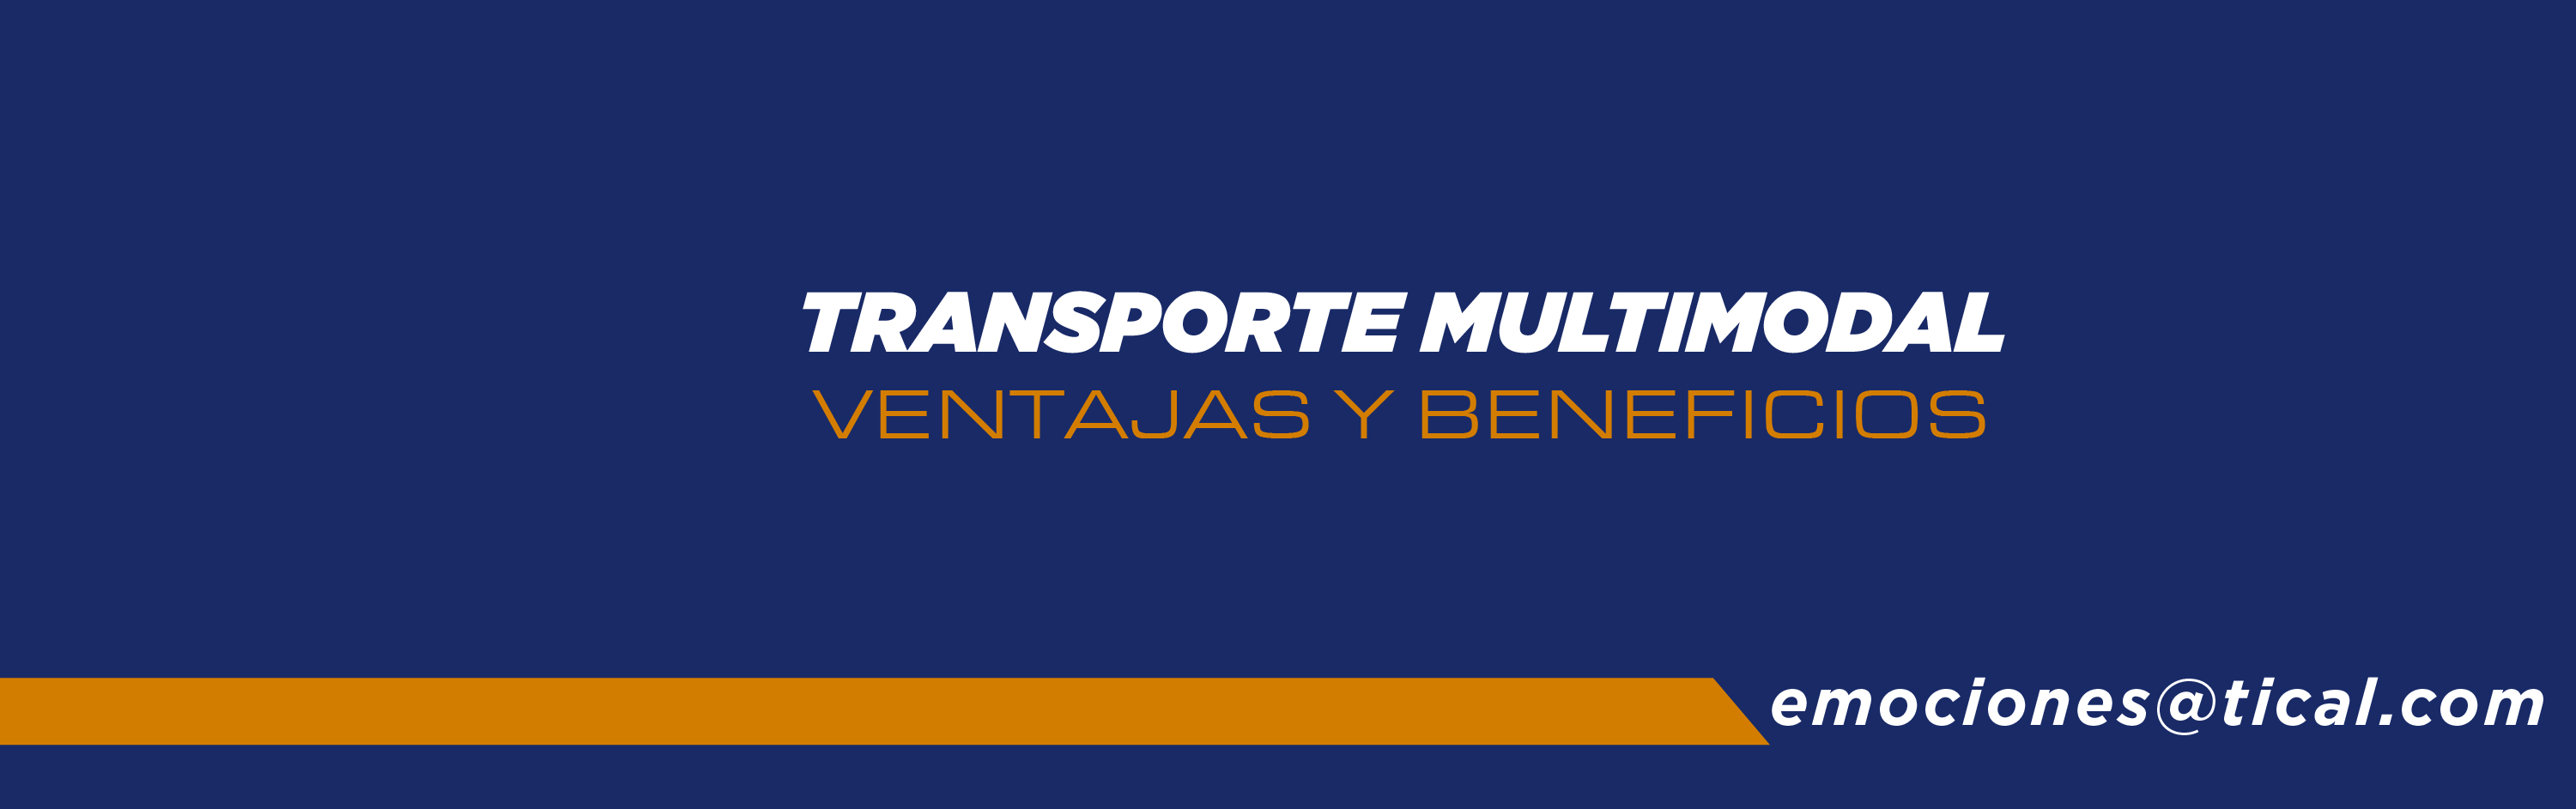 Transporte multimodal: ventajas y beneficios